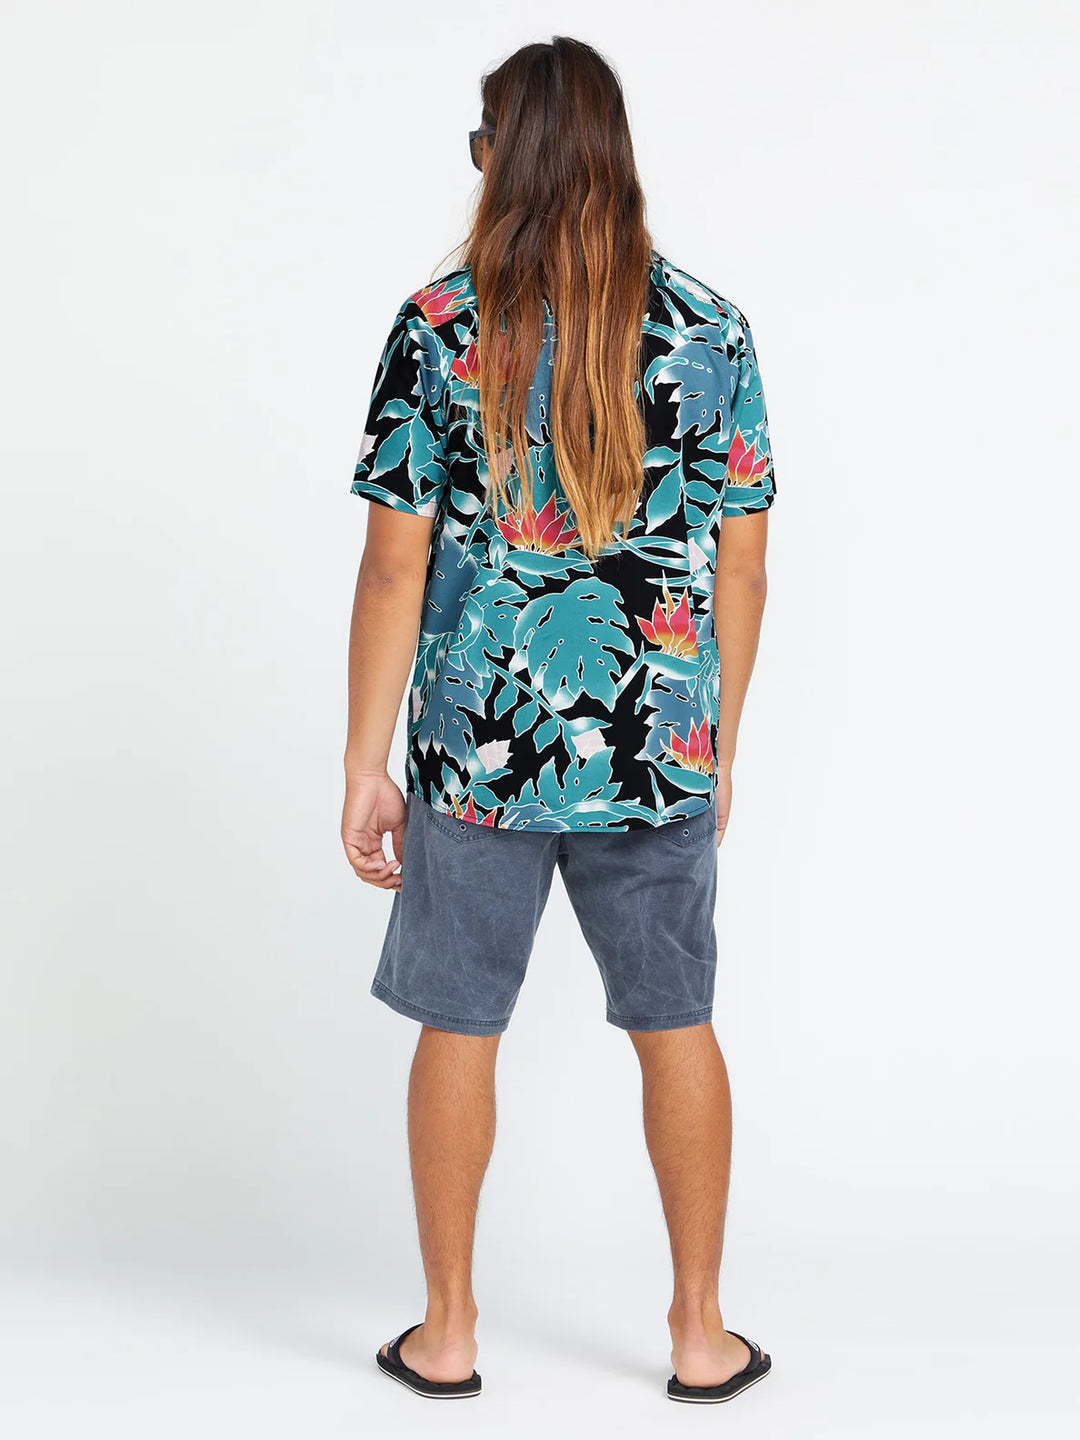 Volcom Leaf Pit Floral Short Sleeve Shirt - Black - Sun Diego Boardshop